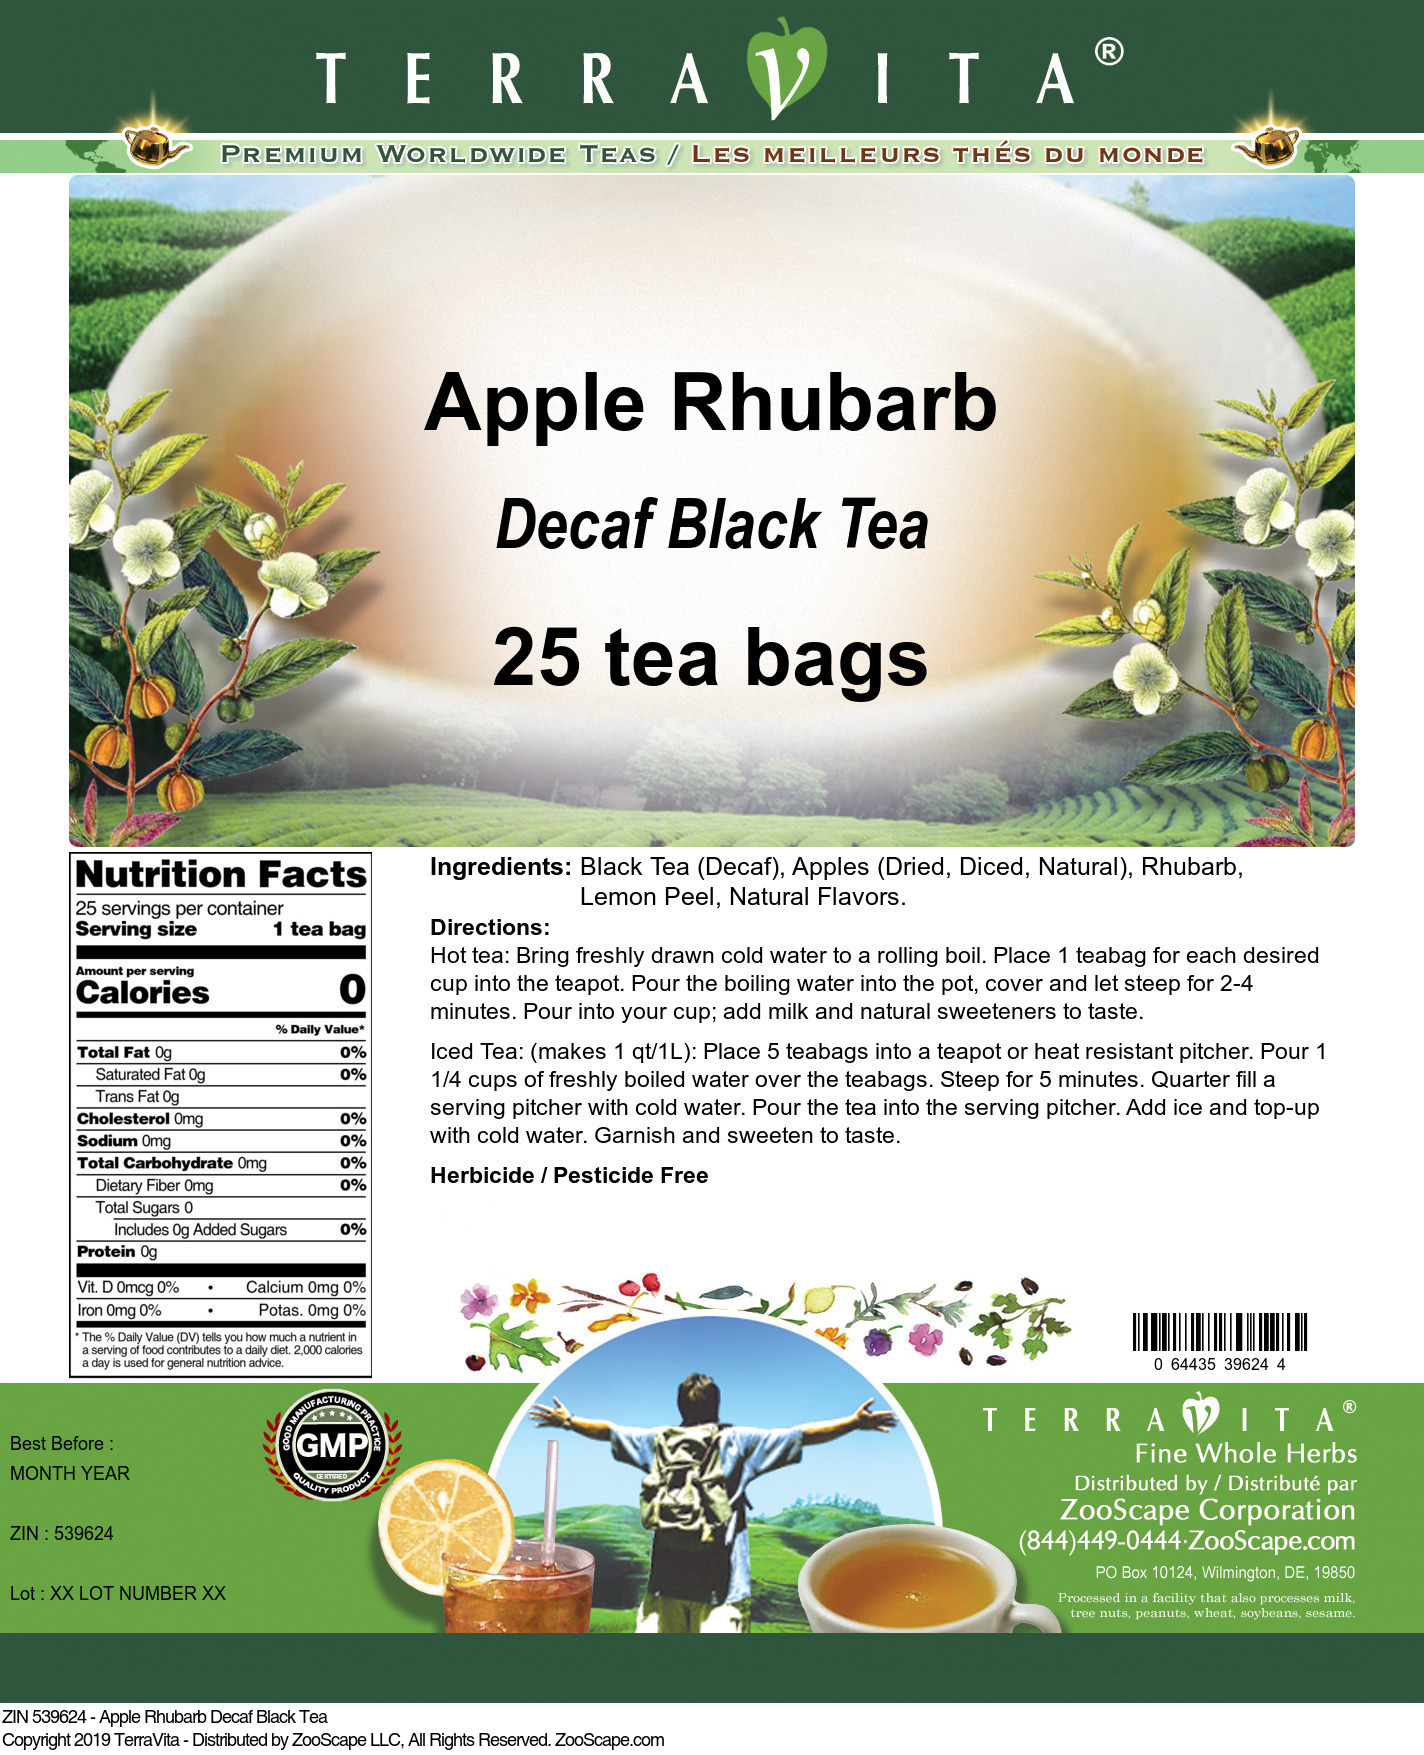 Apple Rhubarb Decaf Black Tea - Label